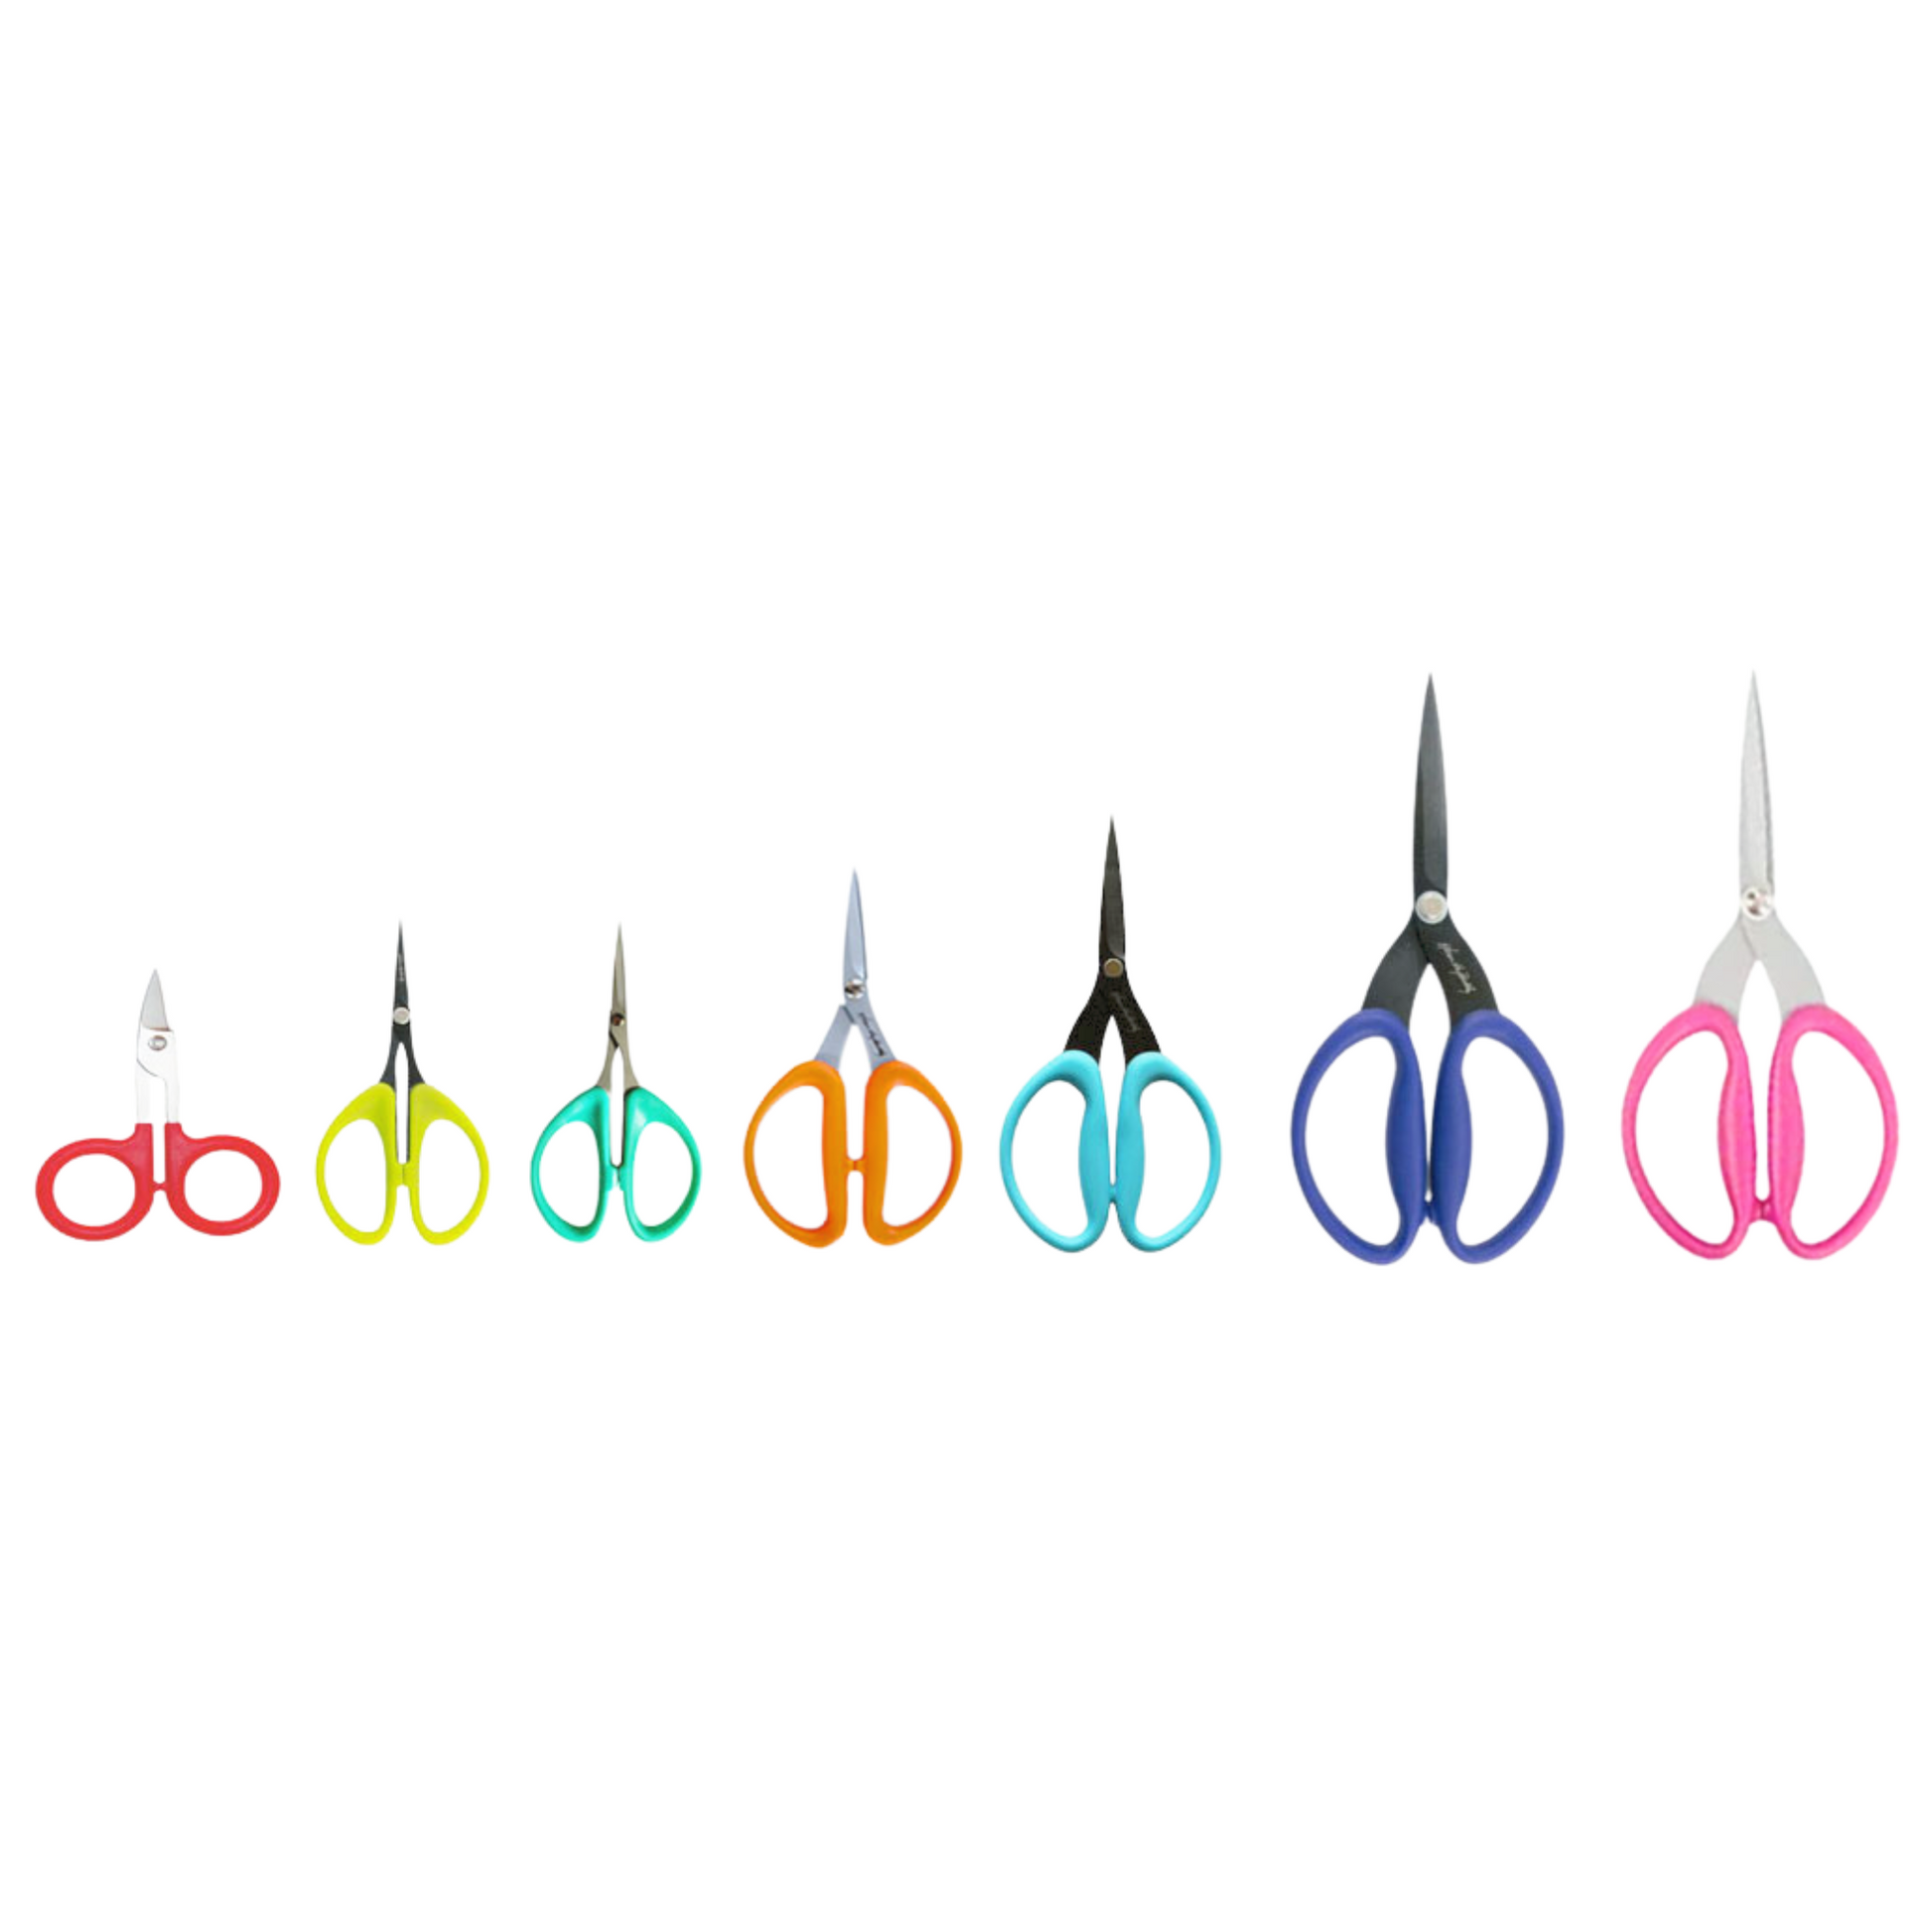 the full range of Karen Kay Buckley scissors